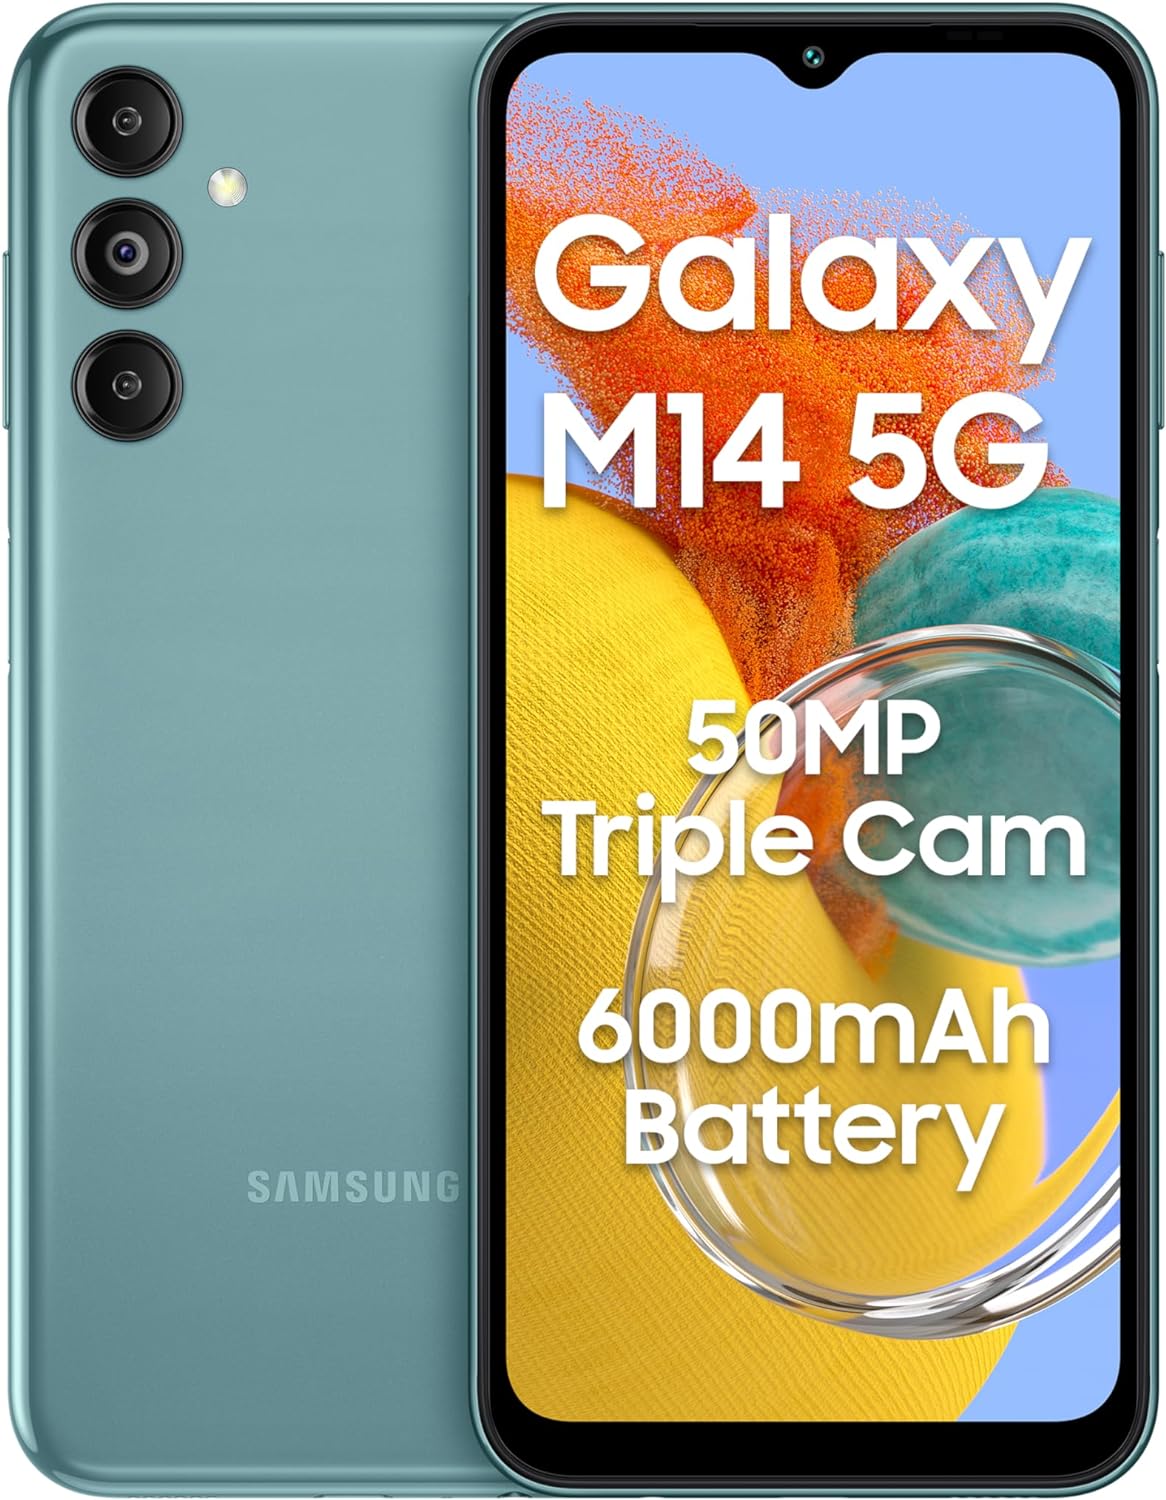 Điện thoại Samsung Galaxy M14 5G (4GB/64GB) - Hàng chính hãng